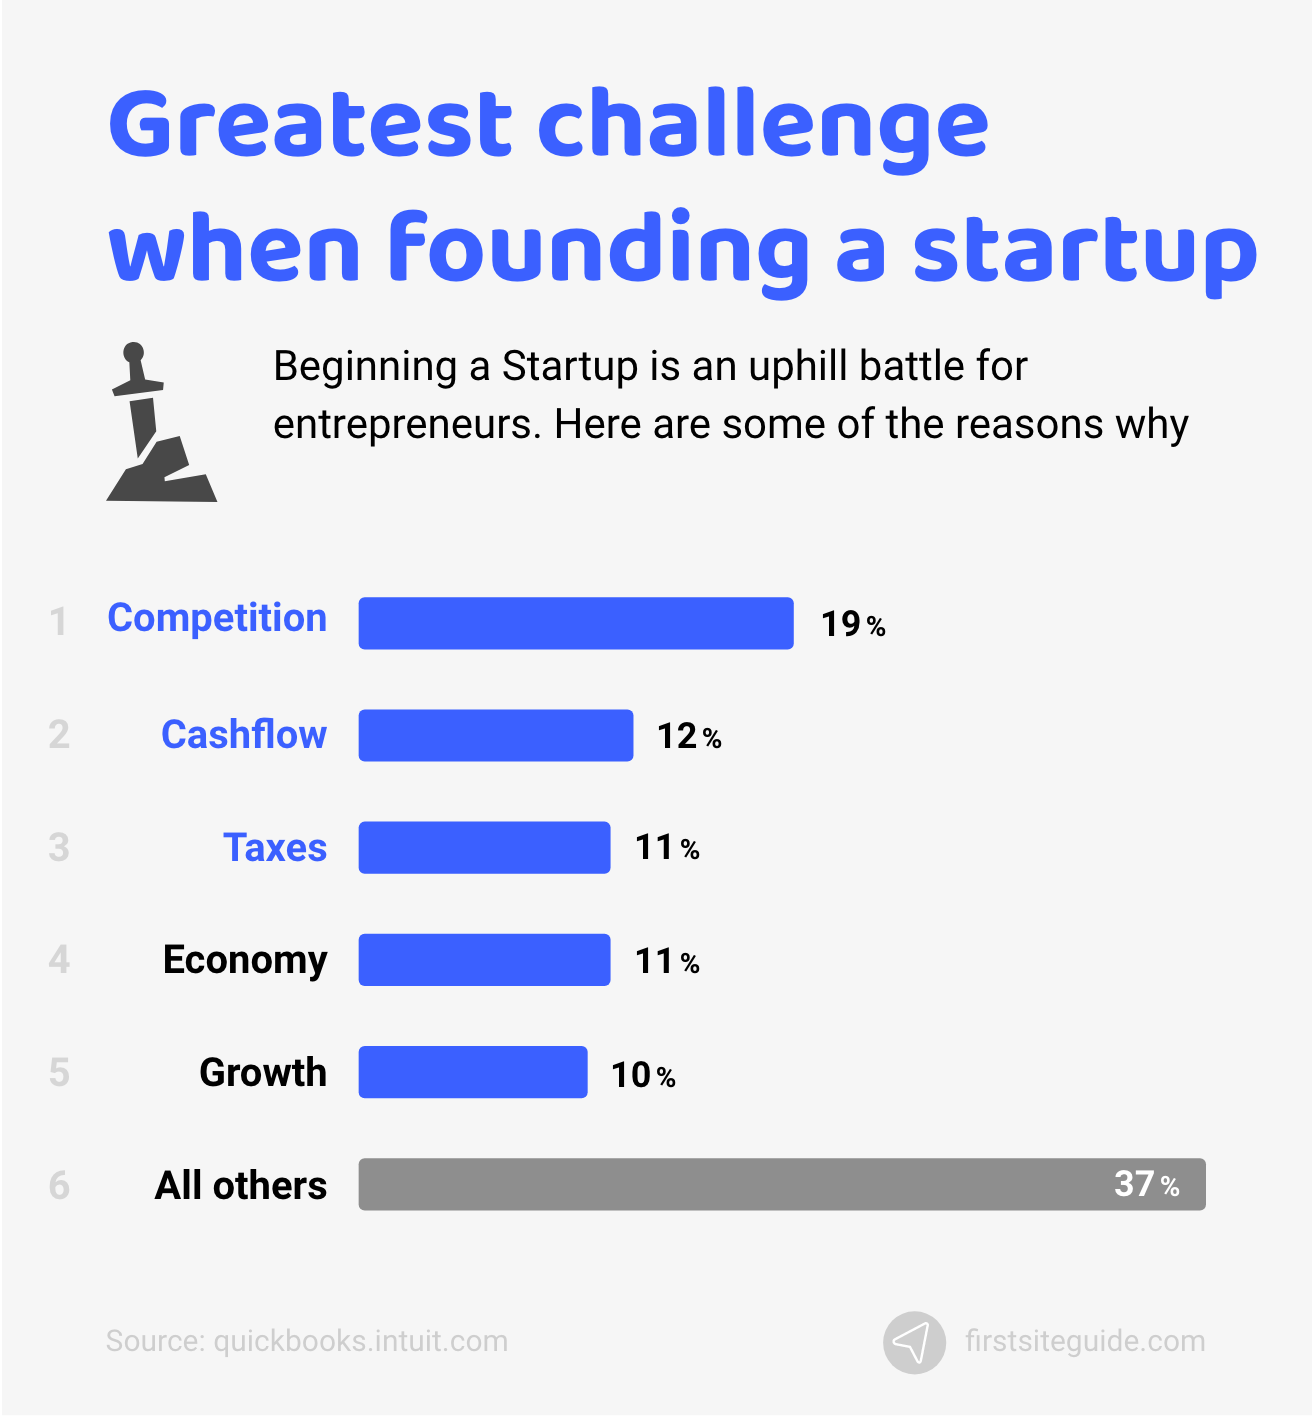 El mayor desafío al fundar una startup